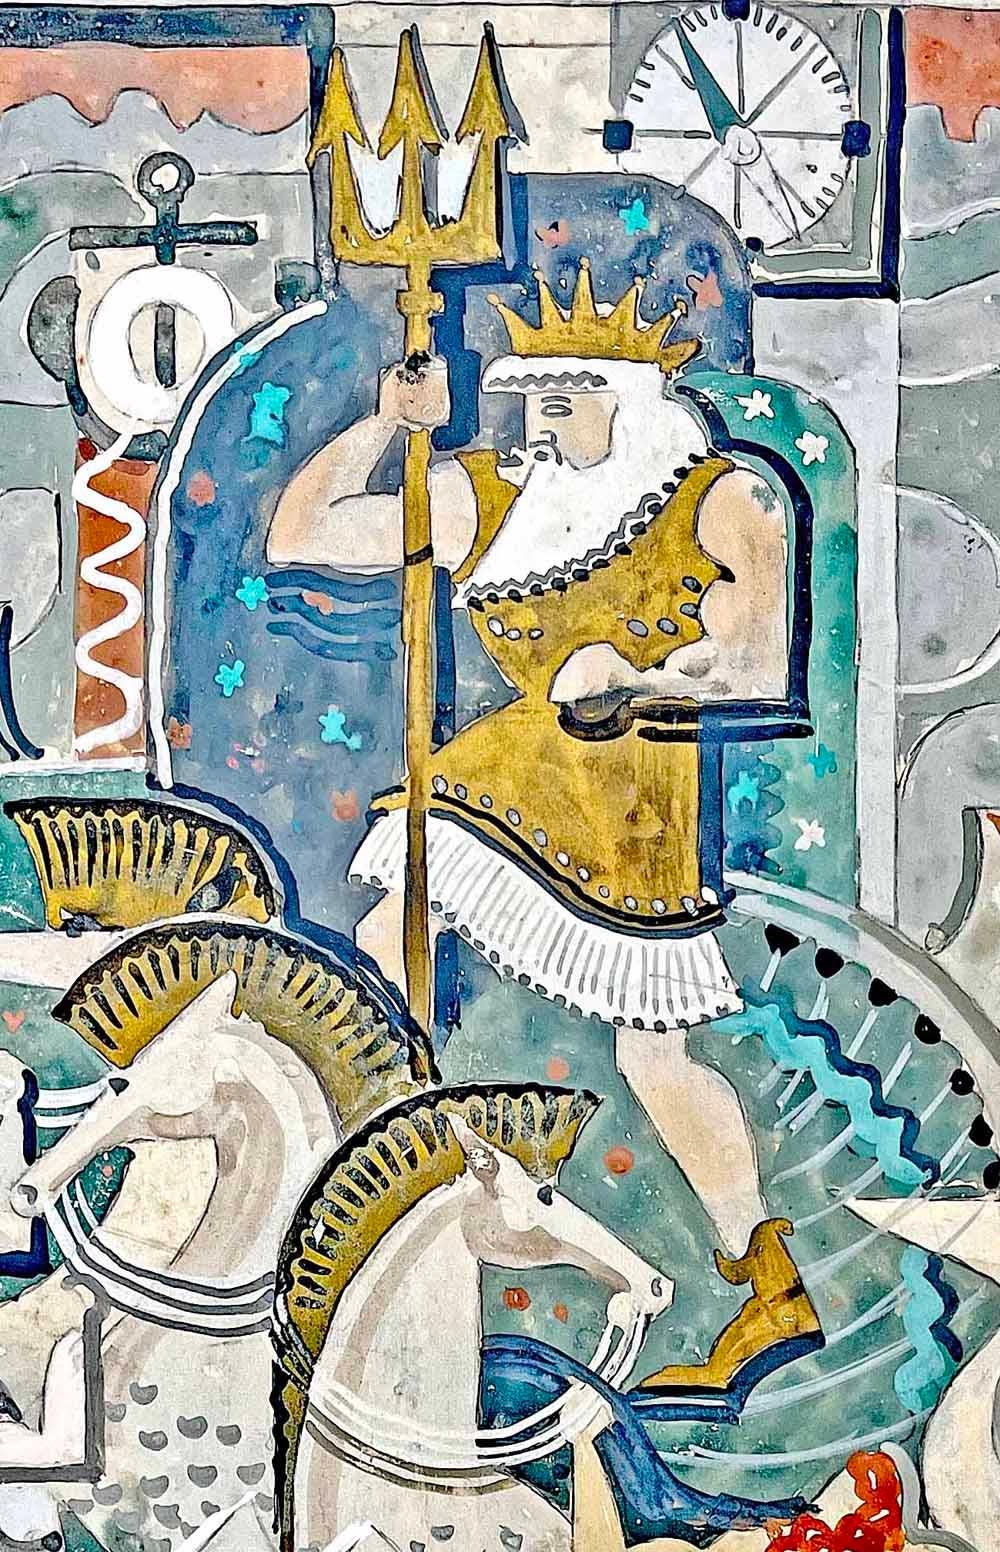 Très stylisée, cette peinture Art Deco de Bruno Seuchter présente une scène aquatique grouillante de vie, centrée autour de Neptune, son trident brandi. Autour de lui, une coterie de sirènes, d'hippocampes, de Tritons et, en arrière-plan, des